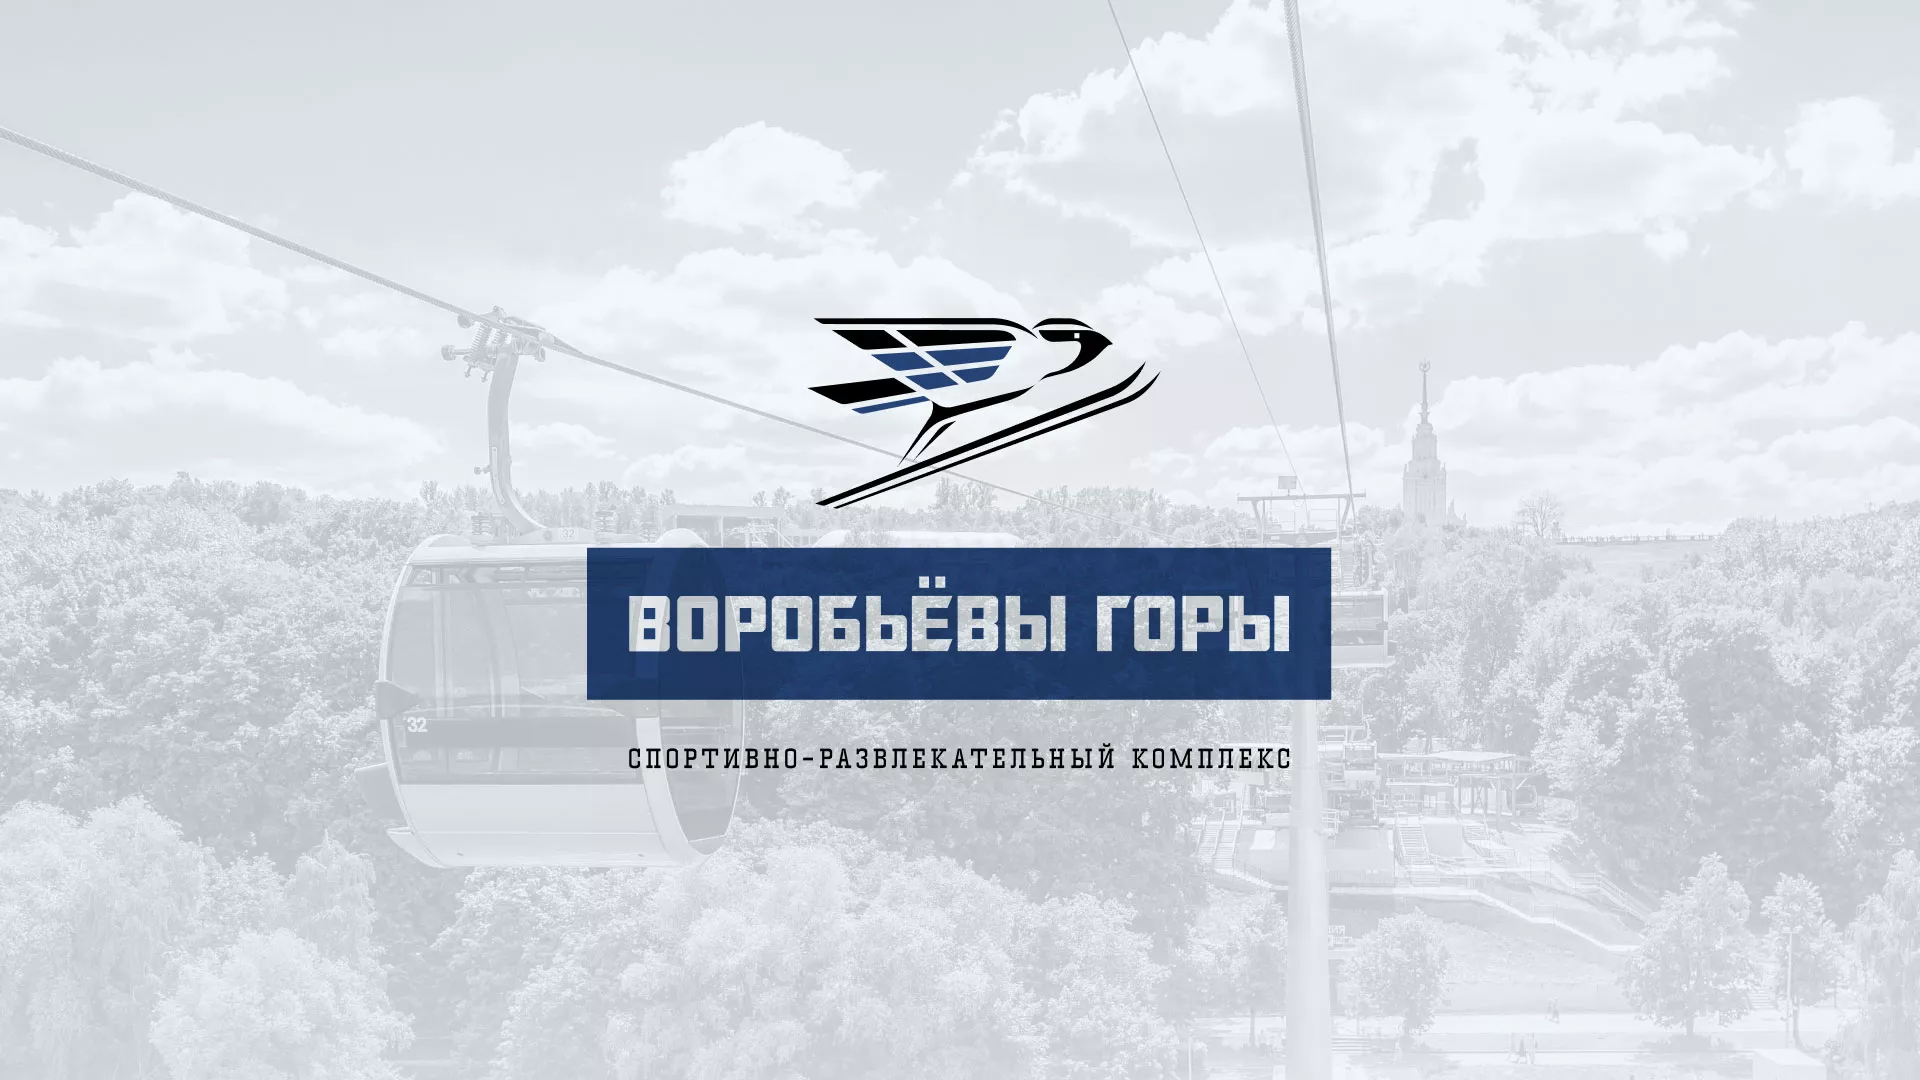 Разработка сайта в Партизанске для спортивно-развлекательного комплекса «Воробьёвы горы»